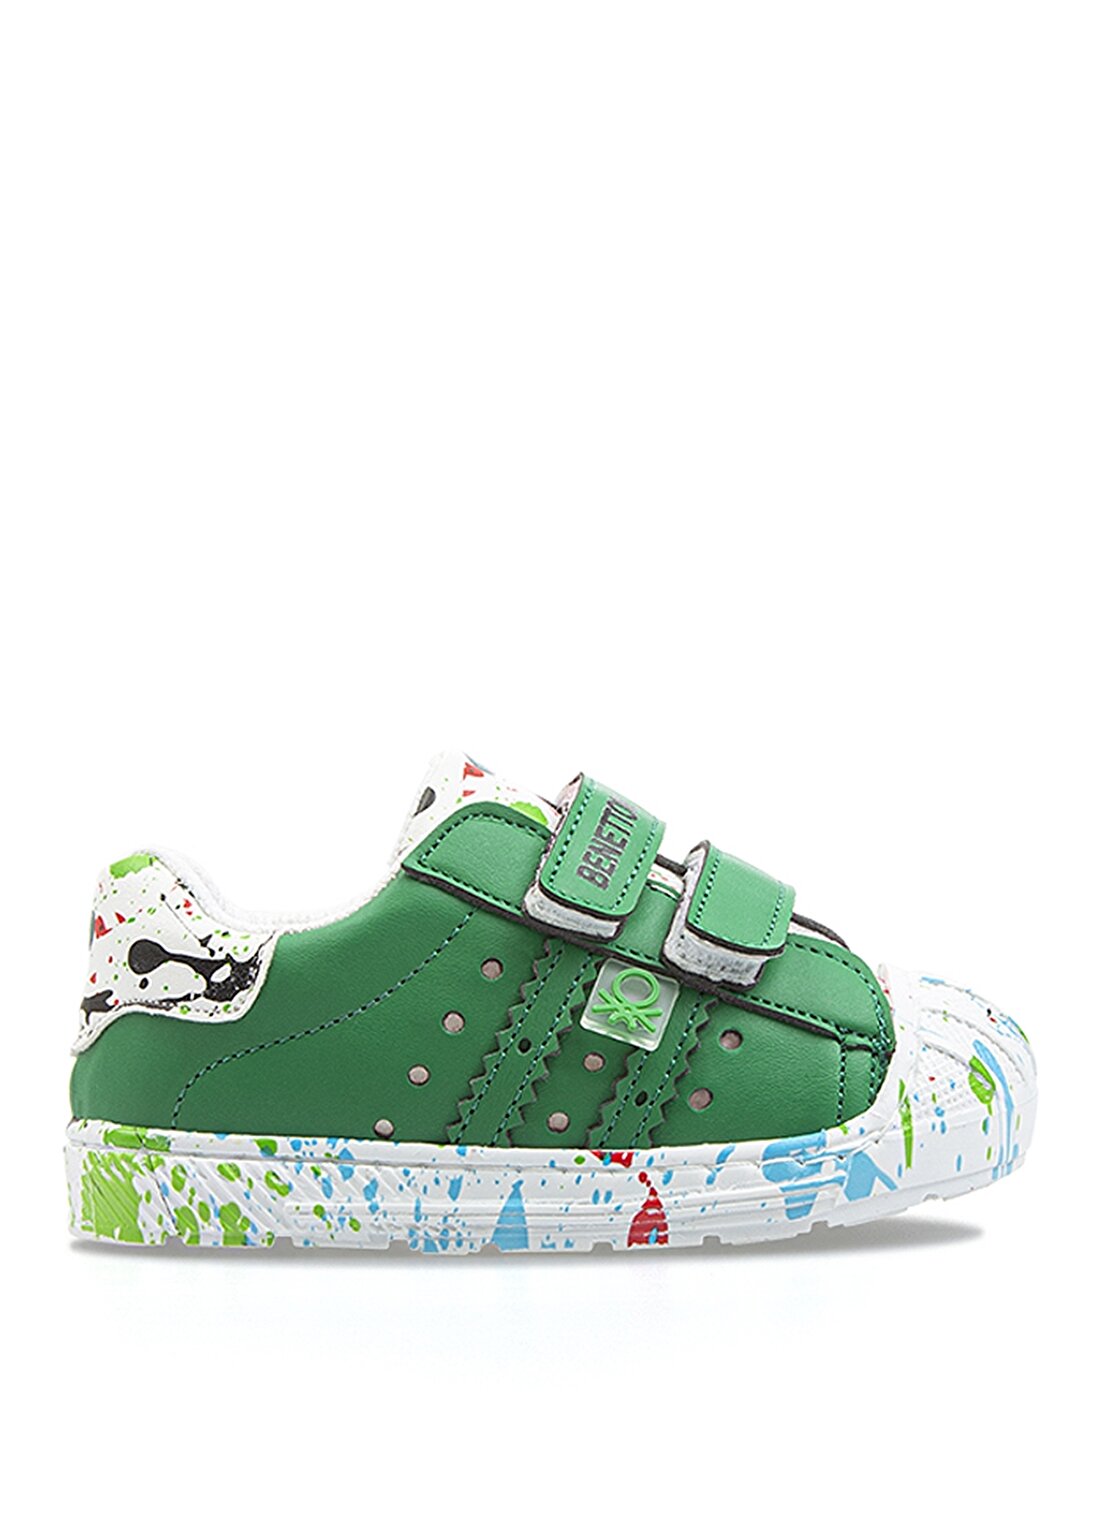 Benetton BN-1017 Yeşil Bebek Yürüyüş Ayakkabısı